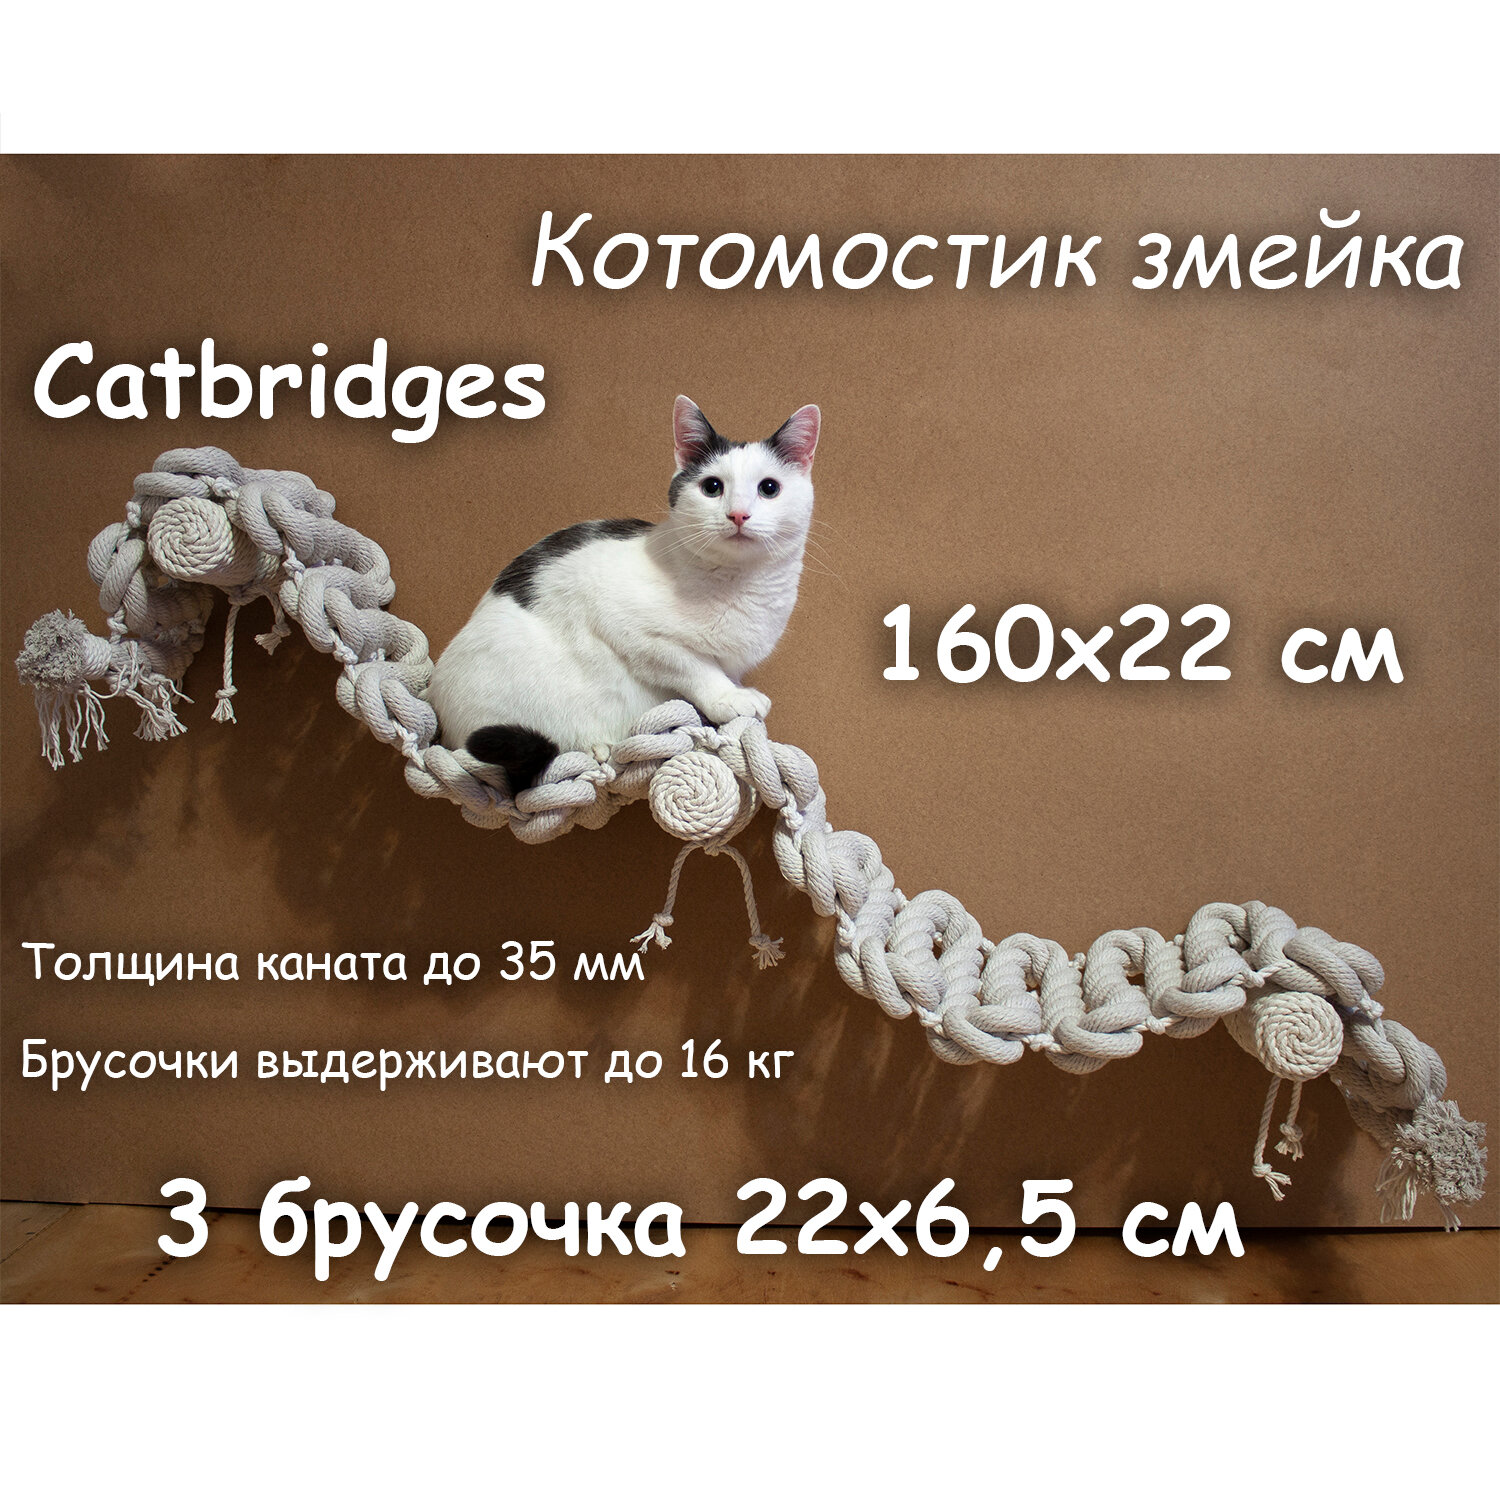 Когтеточка для кошки из хлопка . 160х22 см, 3 брусочка . канат 32 мм, шпилька 8 мм . Котомостик Змейка от Catbridges . Белый . Лежанка .